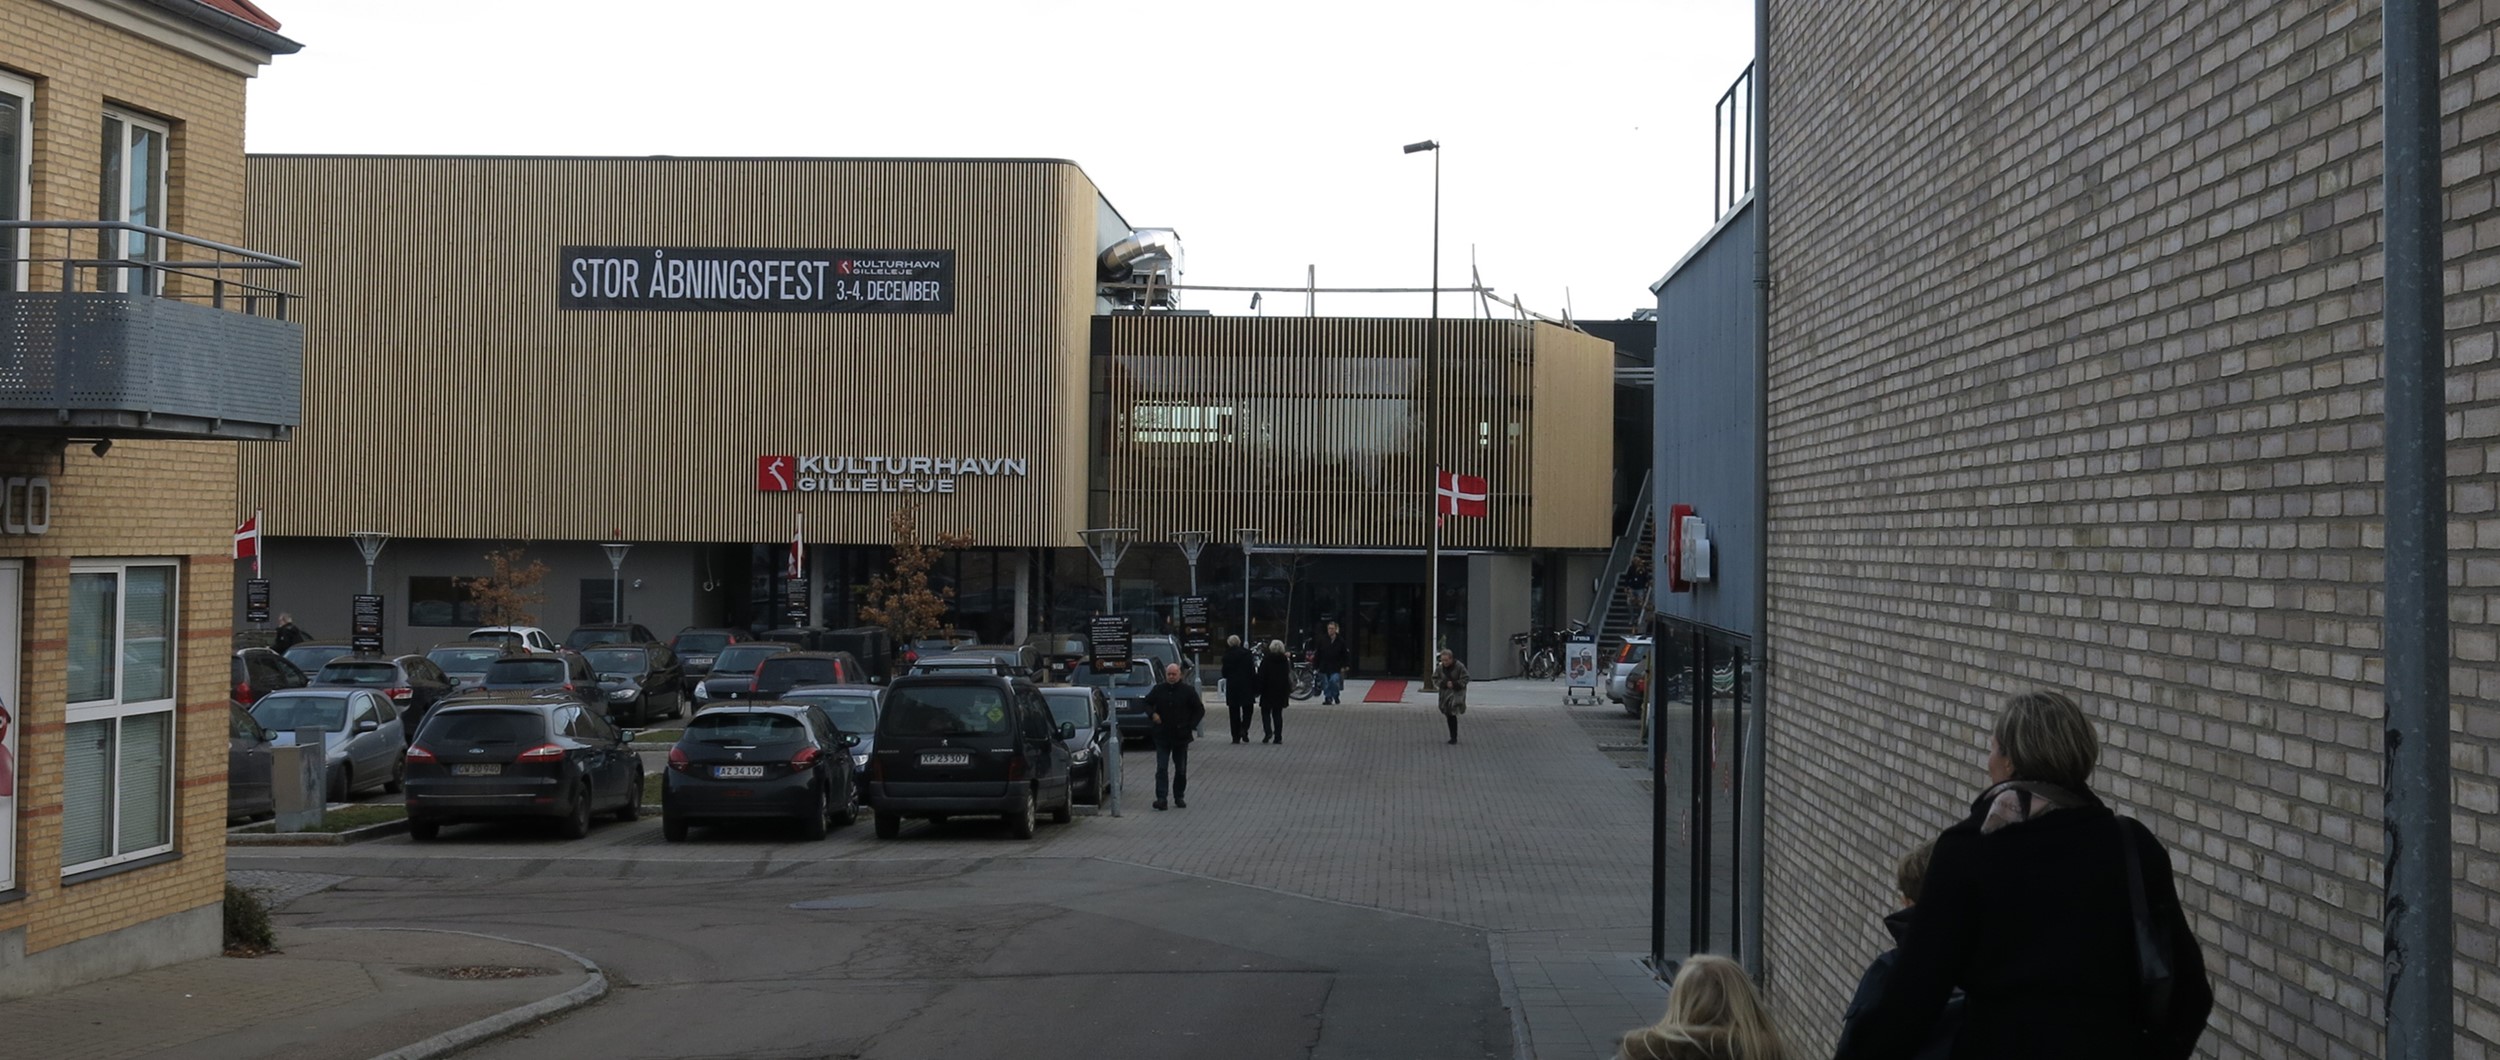 Projektet Kulturhavn Gilleleje er tilpasset til den øvrige bys proportioner, og er et stort og vigtigt projekt i byens absolutte centrum.